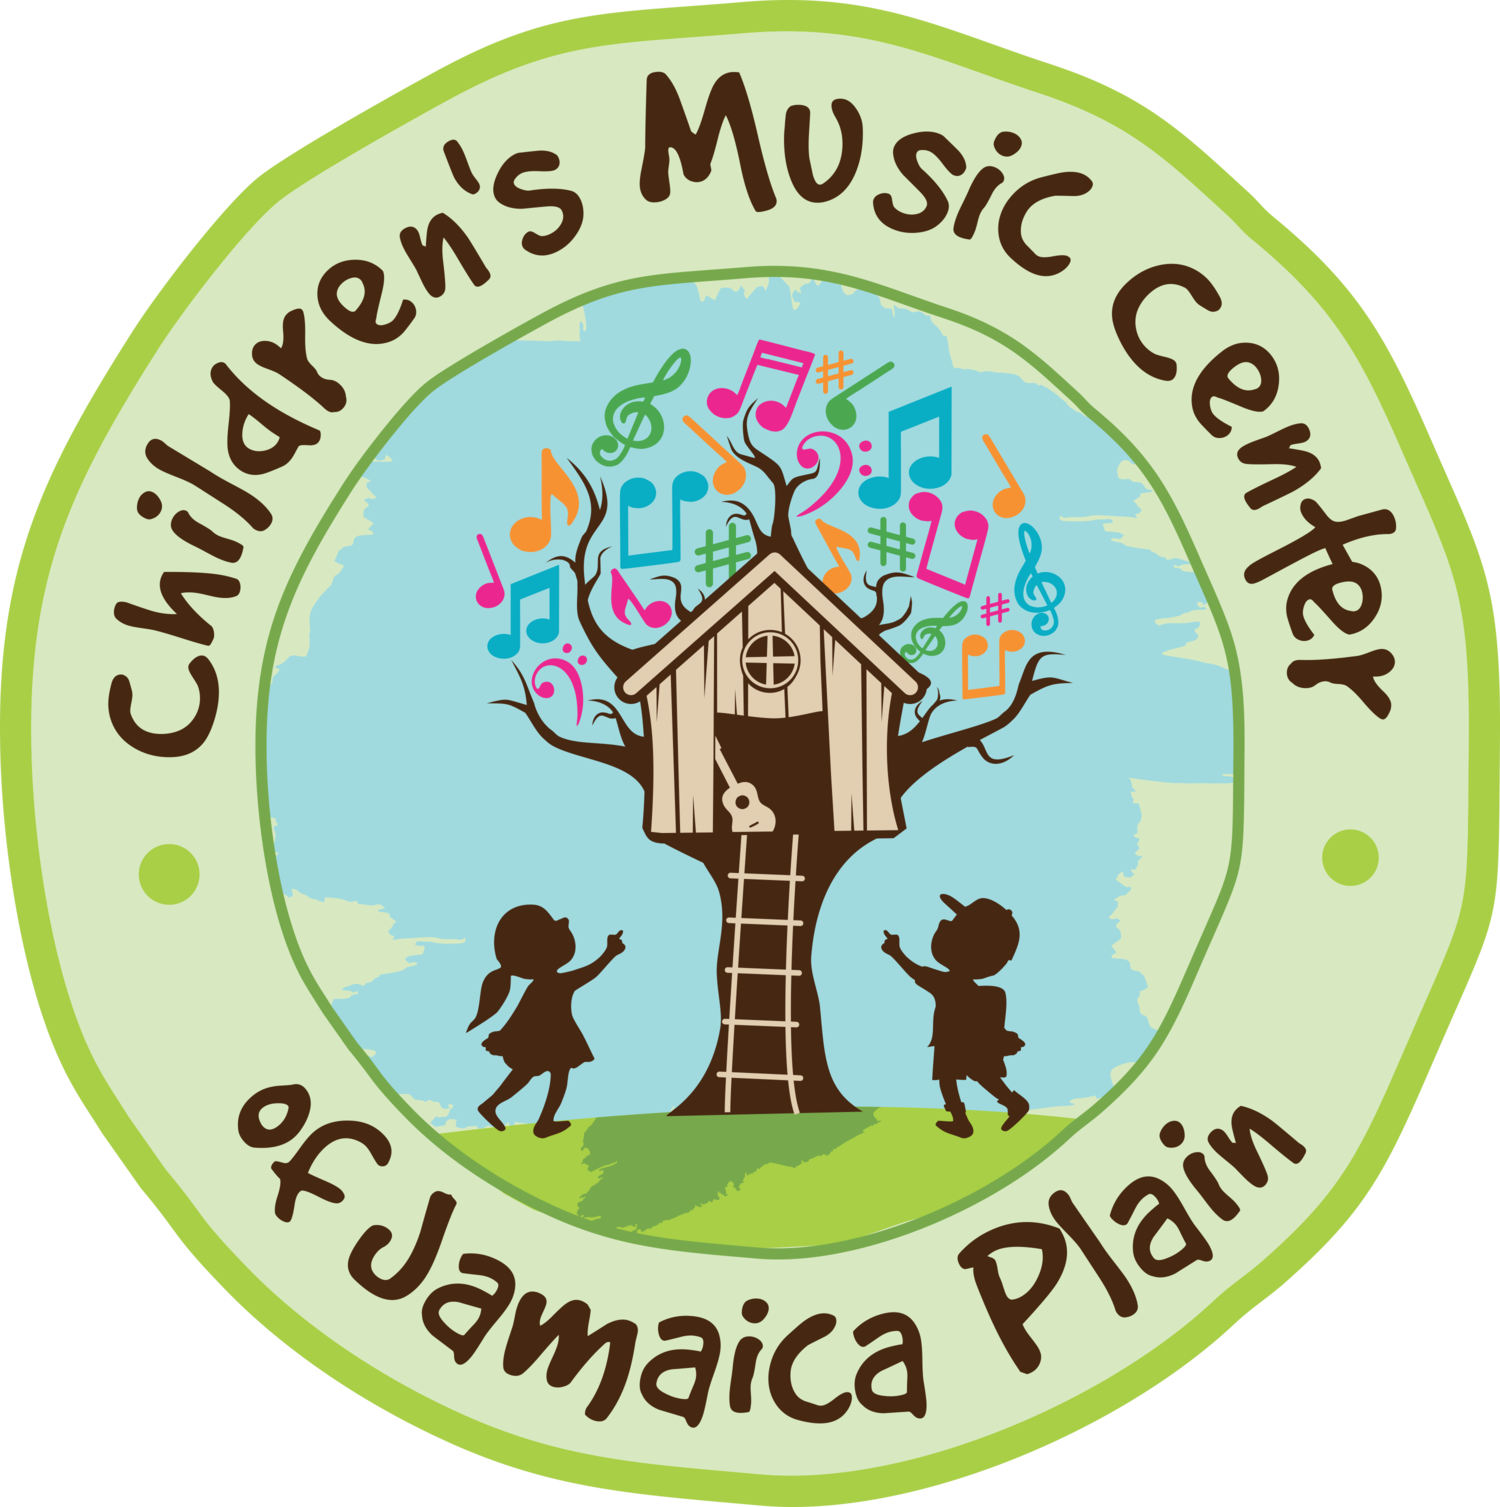 CHILDREN'S MUSIC CENTER OF J.P.